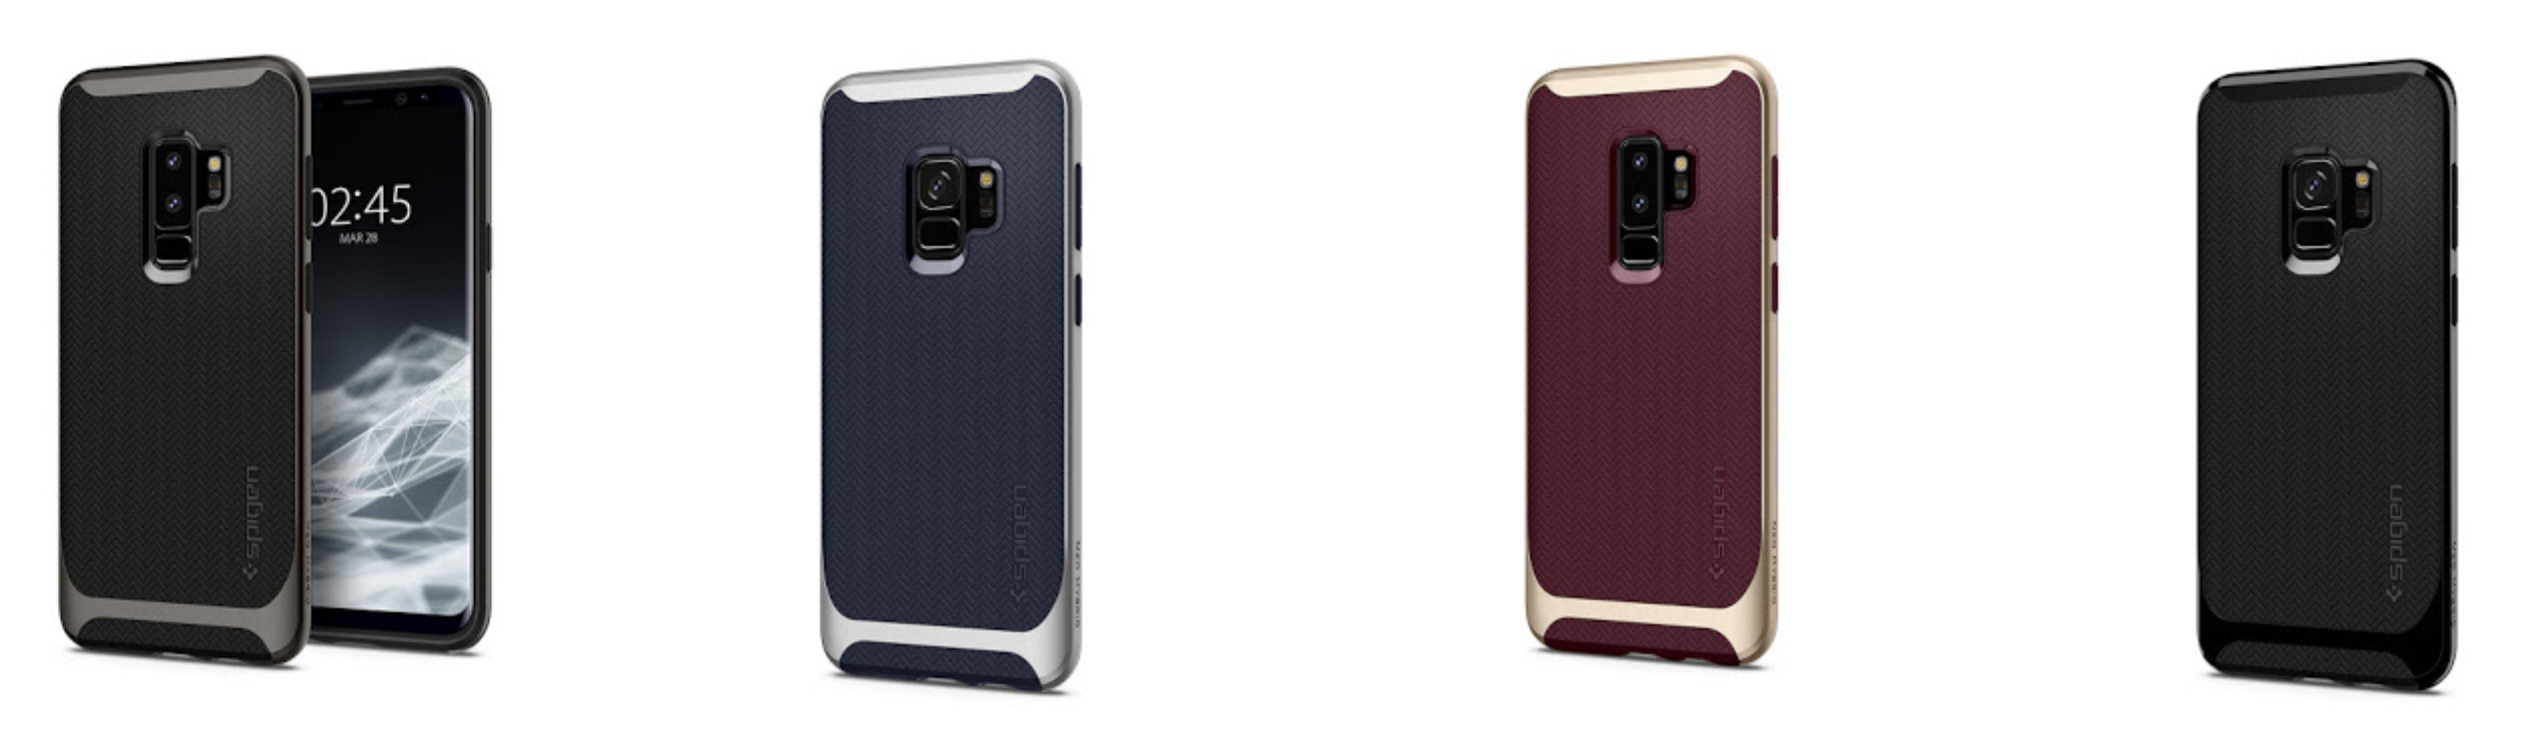 Gentleman vriendelijk compileren Sluit een verzekering af Spigen launches Samsung Galaxy S9 & S9 Plus cases & accessories available  now